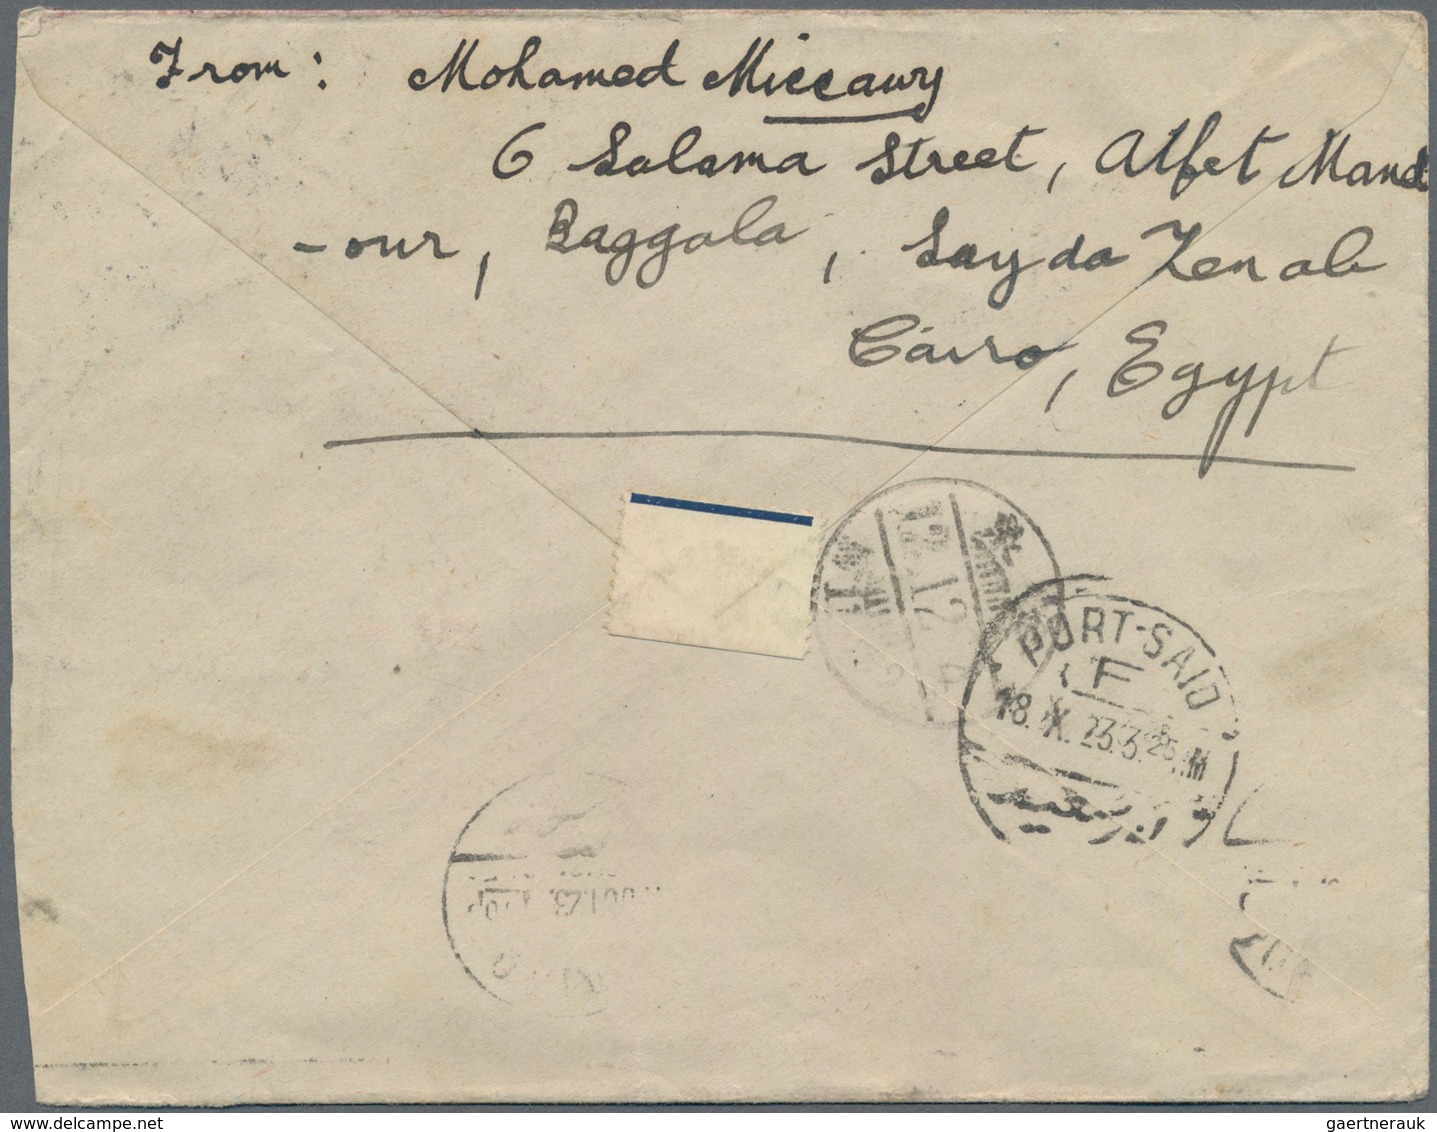 Ägypten: 1922/23, Two Covers With 15 C. Frankings From "SAIYIGA ZENAB" Or "CAIRO" To Kinsen/Korea, E - 1866-1914 Khedivato De Egipto